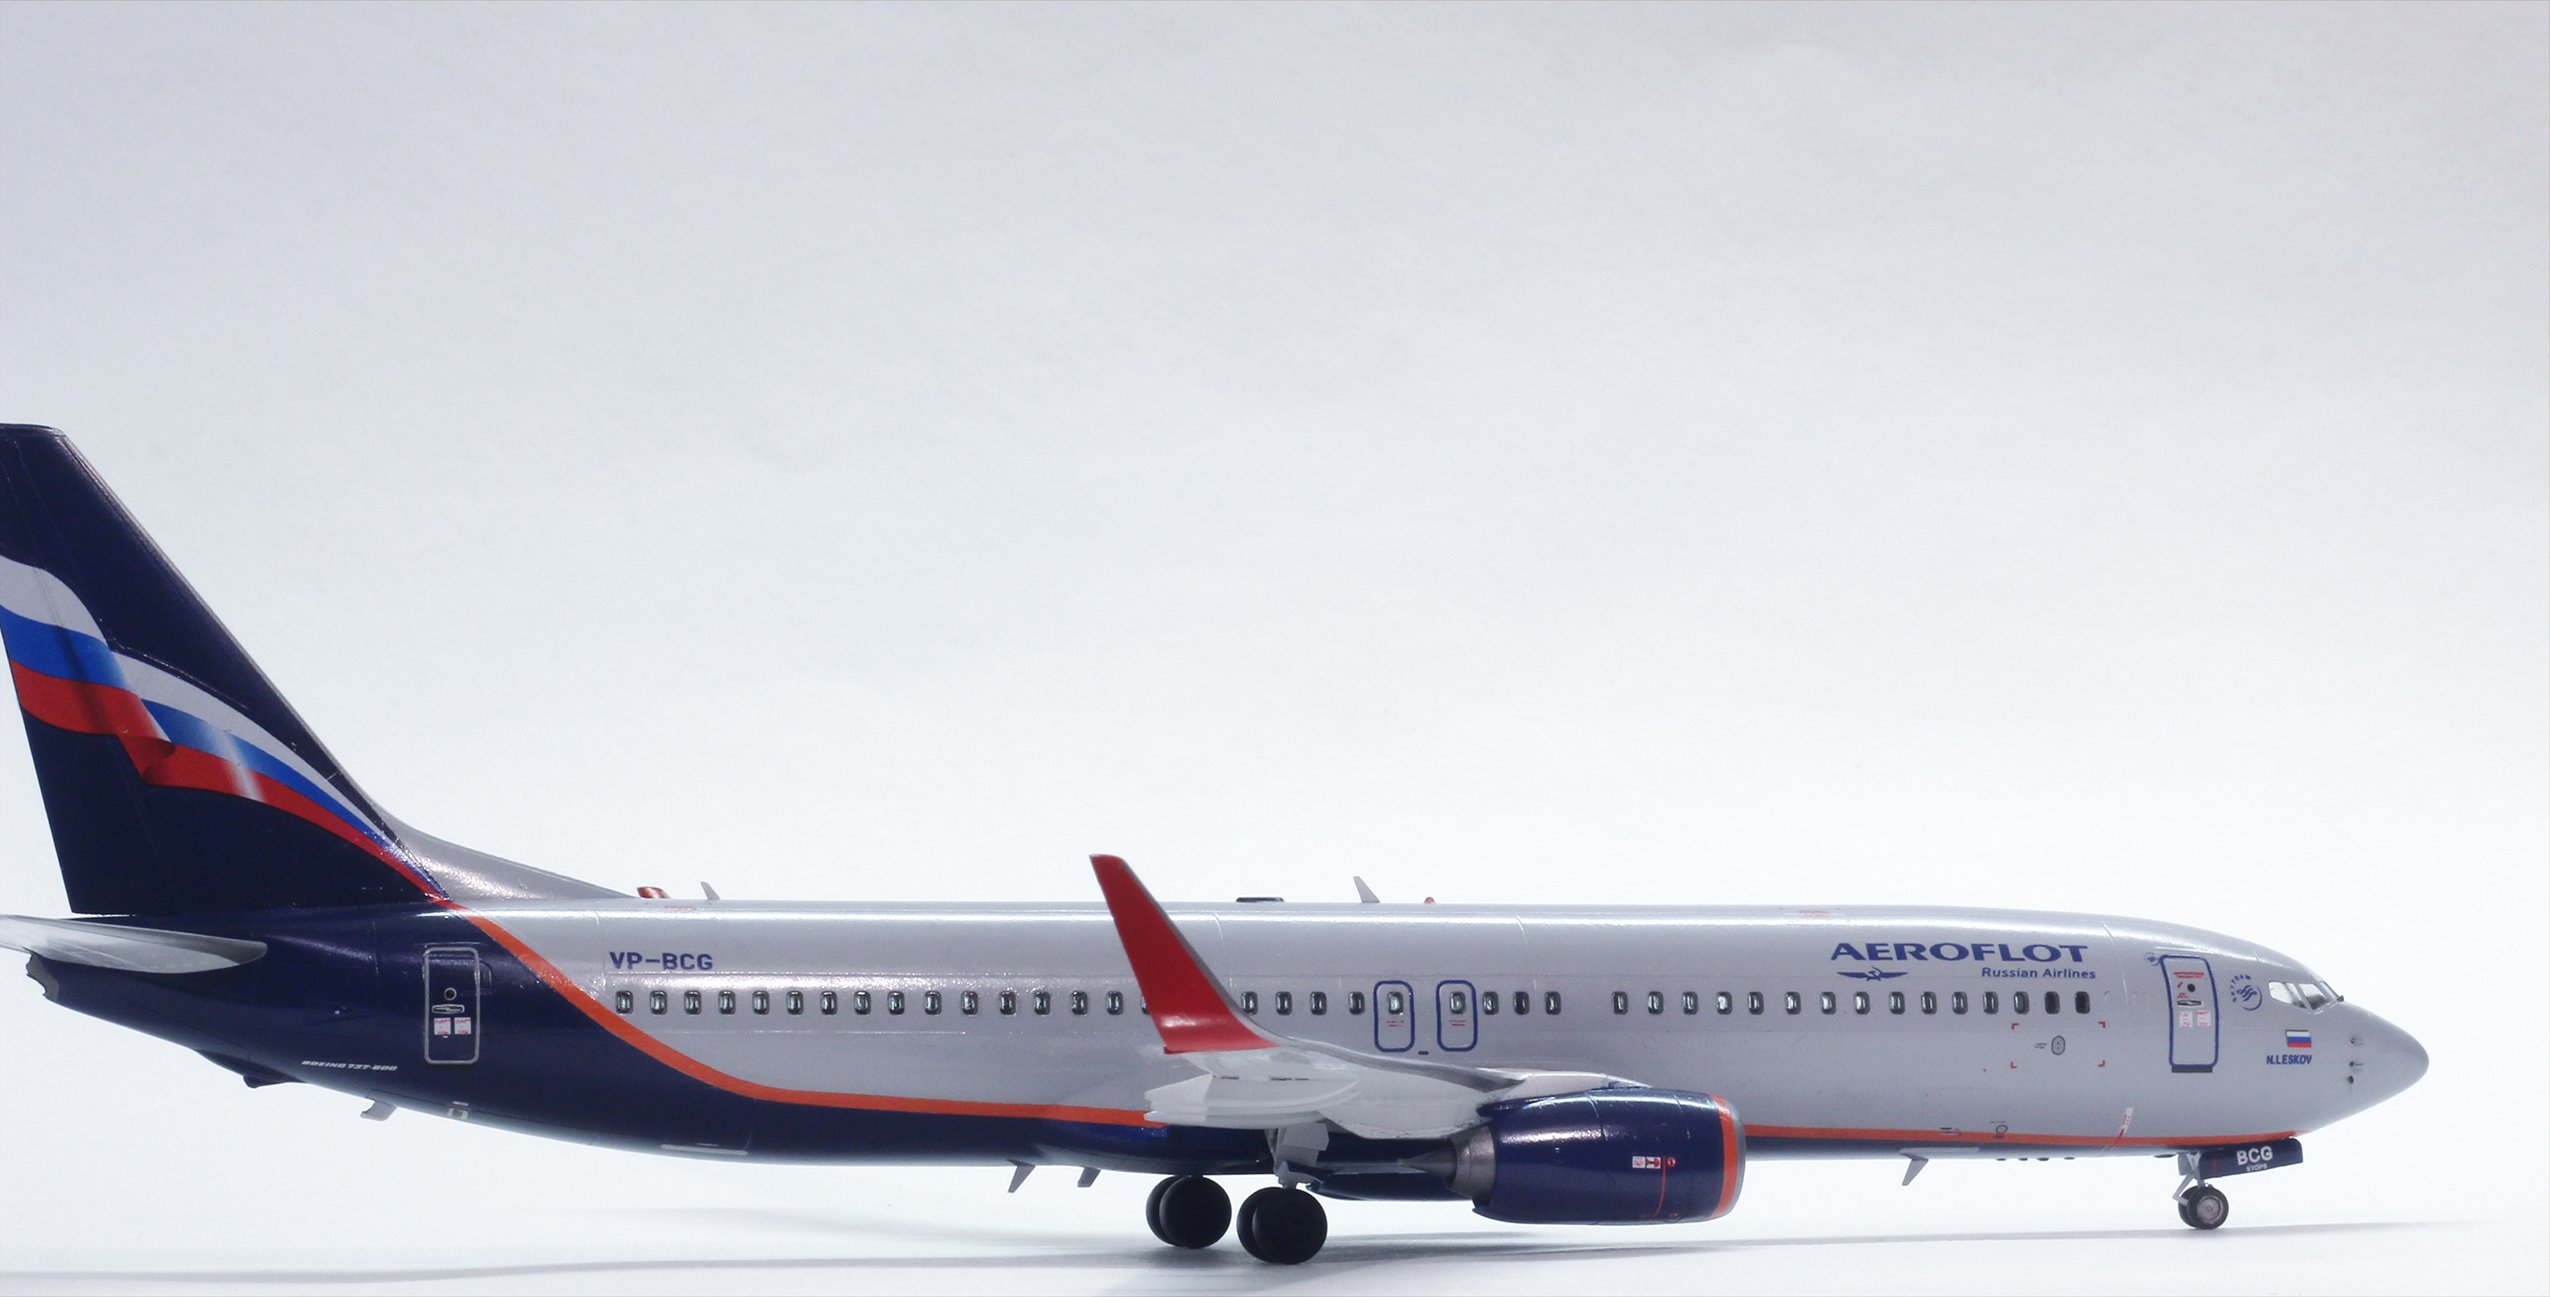 Aeroflot 737. Боинг 737 Аэрофлот. 737-800 Аэрофлот. Боинг 737-800 Аэрофлот. Боинг 737 Аэрофлот модель.